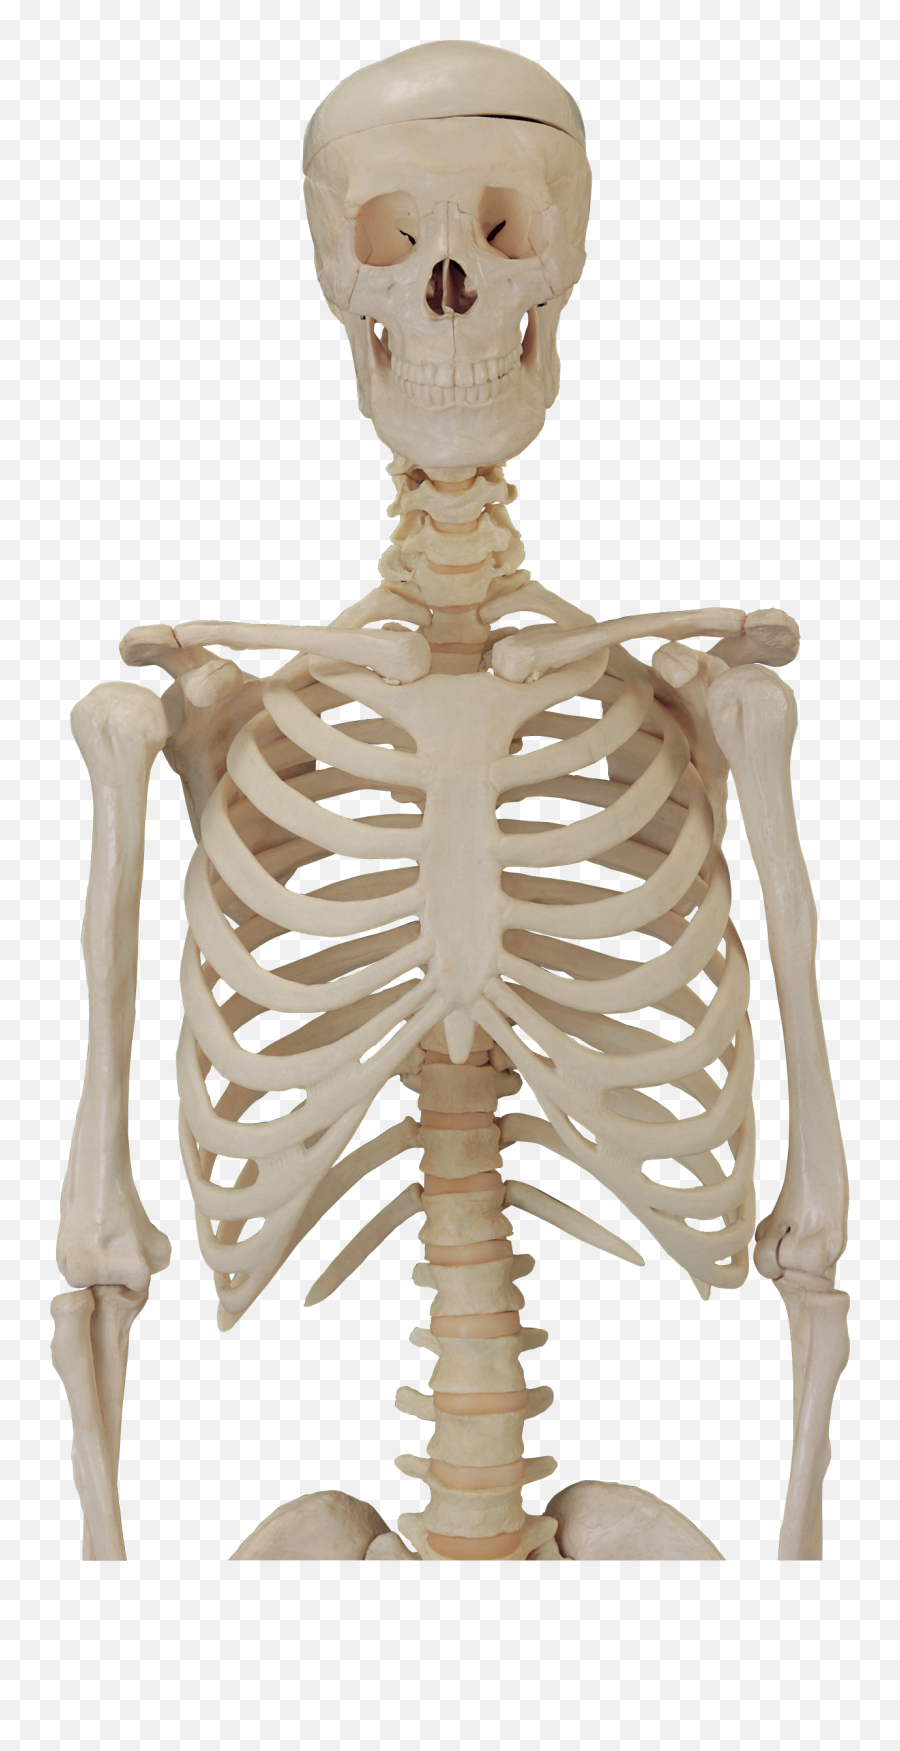 Skeleton Skull Png Image Transparent